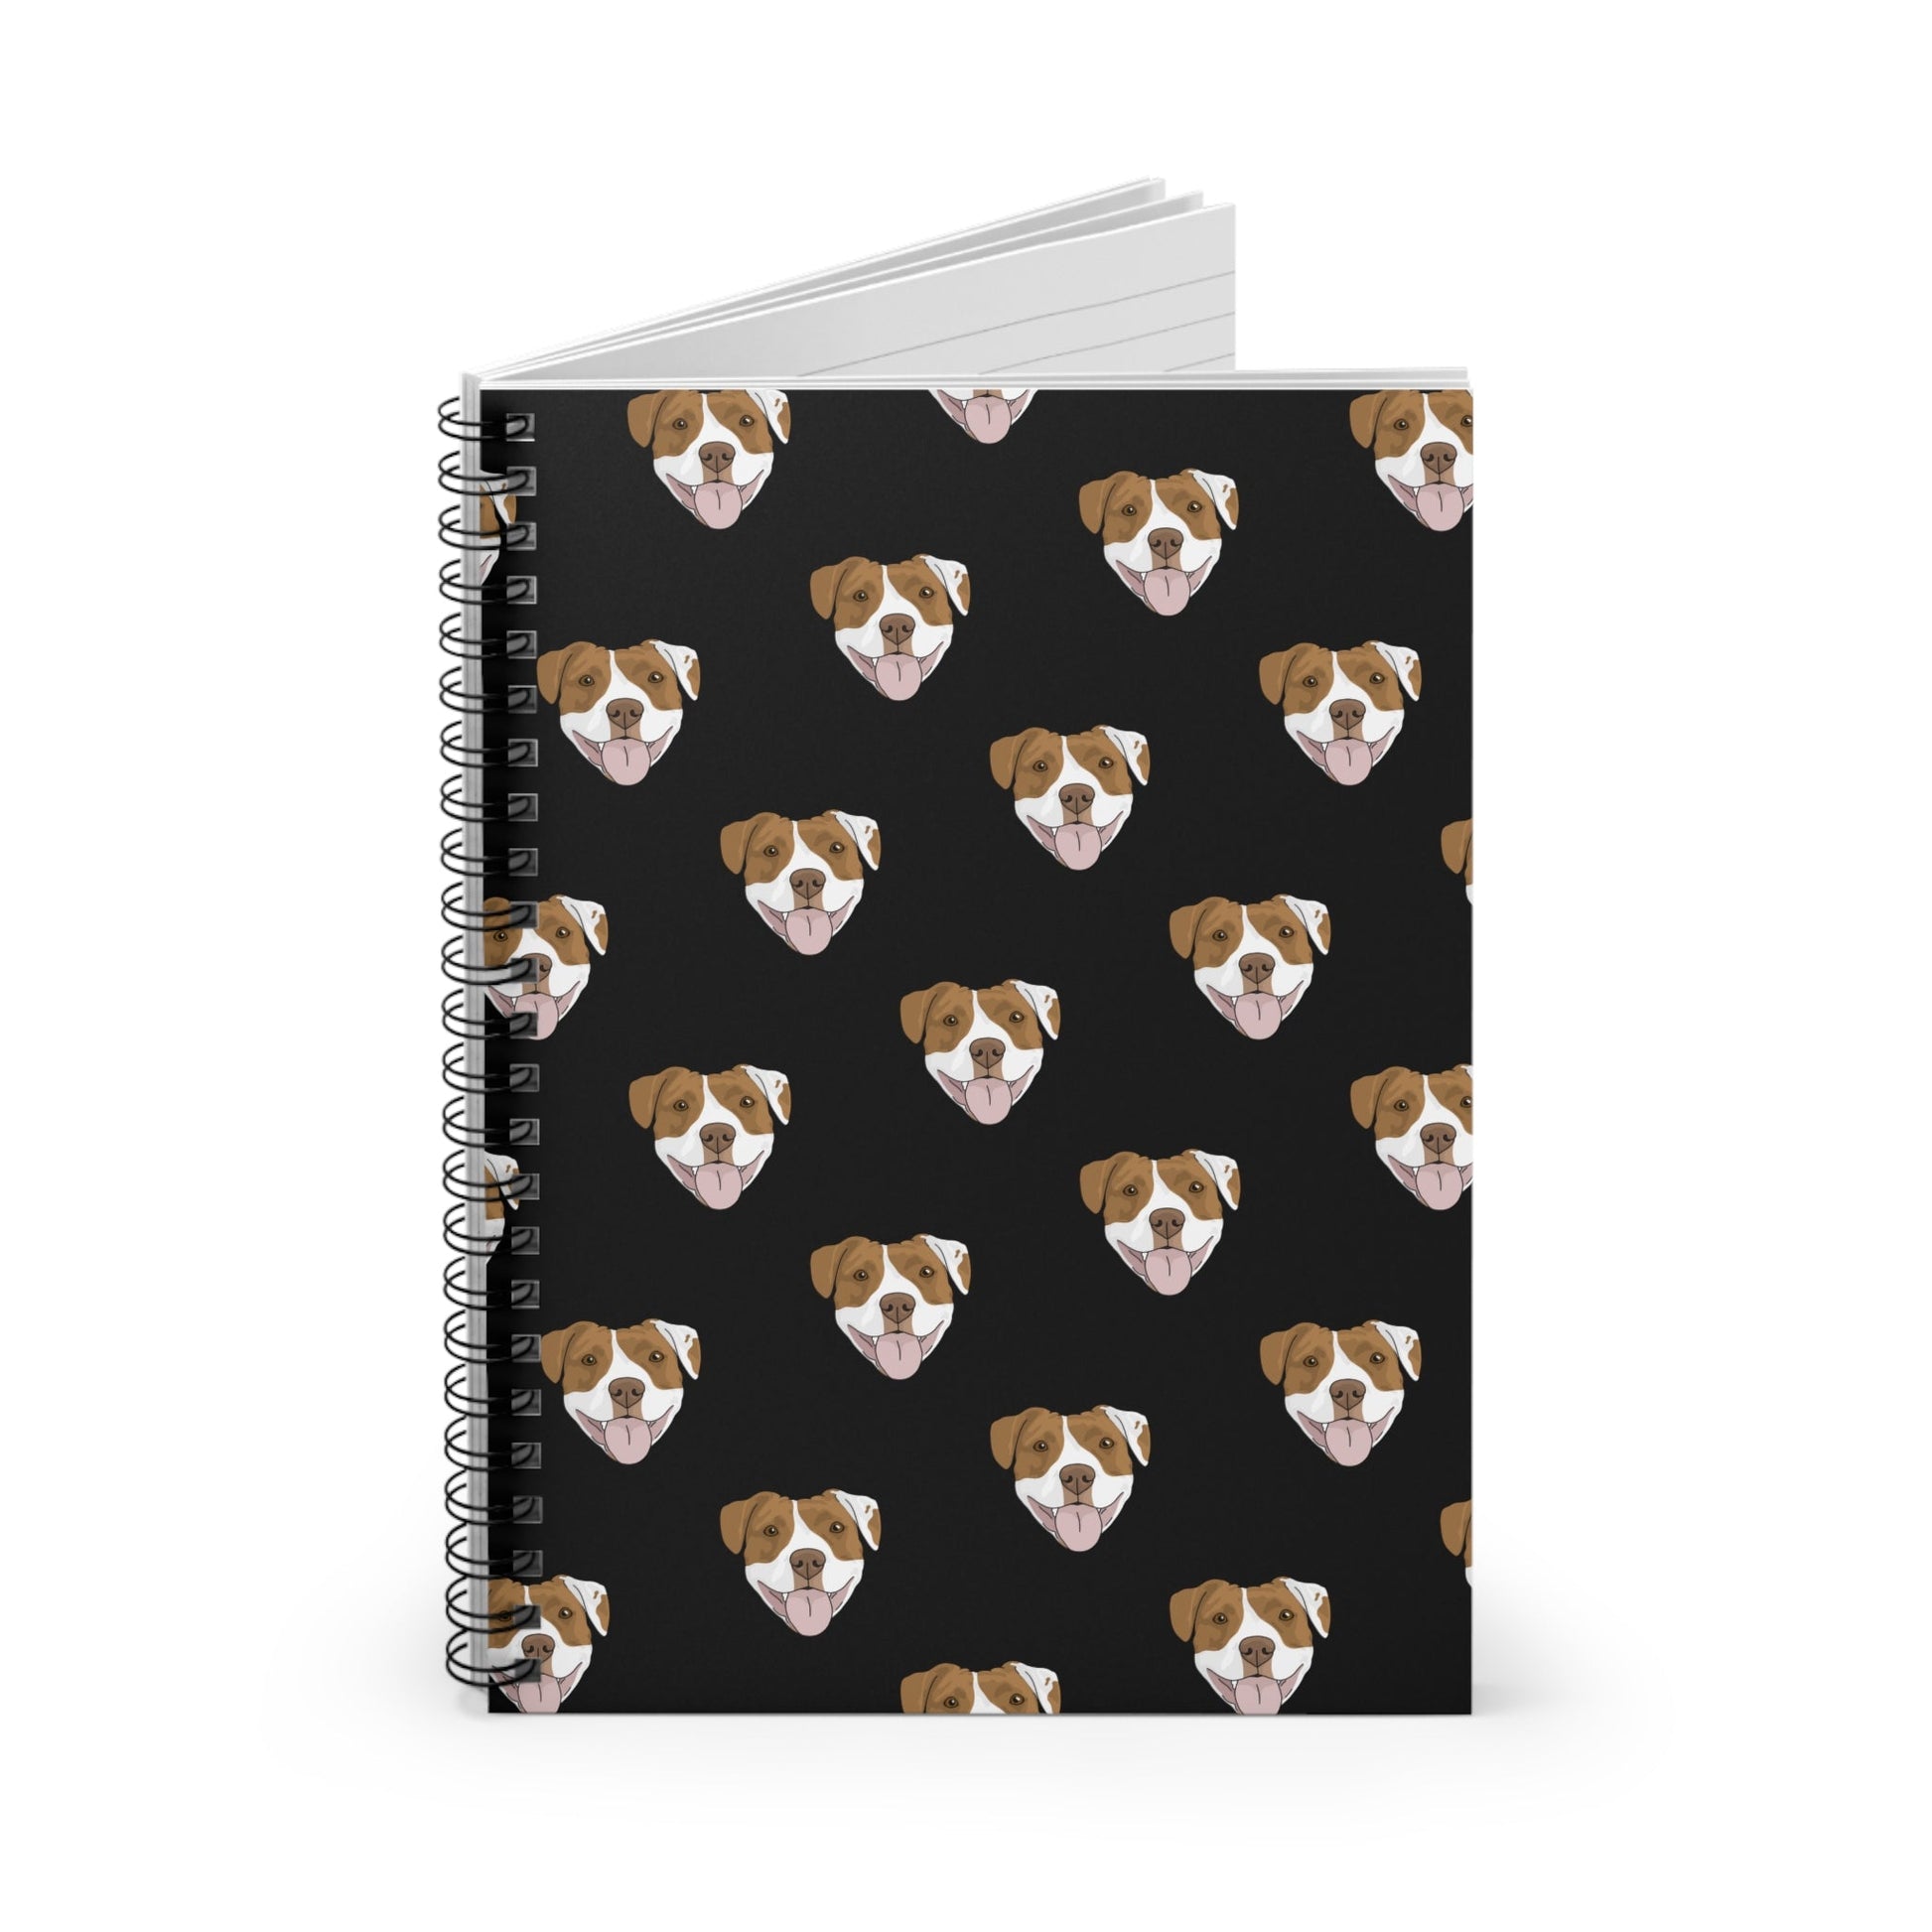 American Staffordshire Terrier | Spiral Notebook - Detezi Designs-22265758658568692214